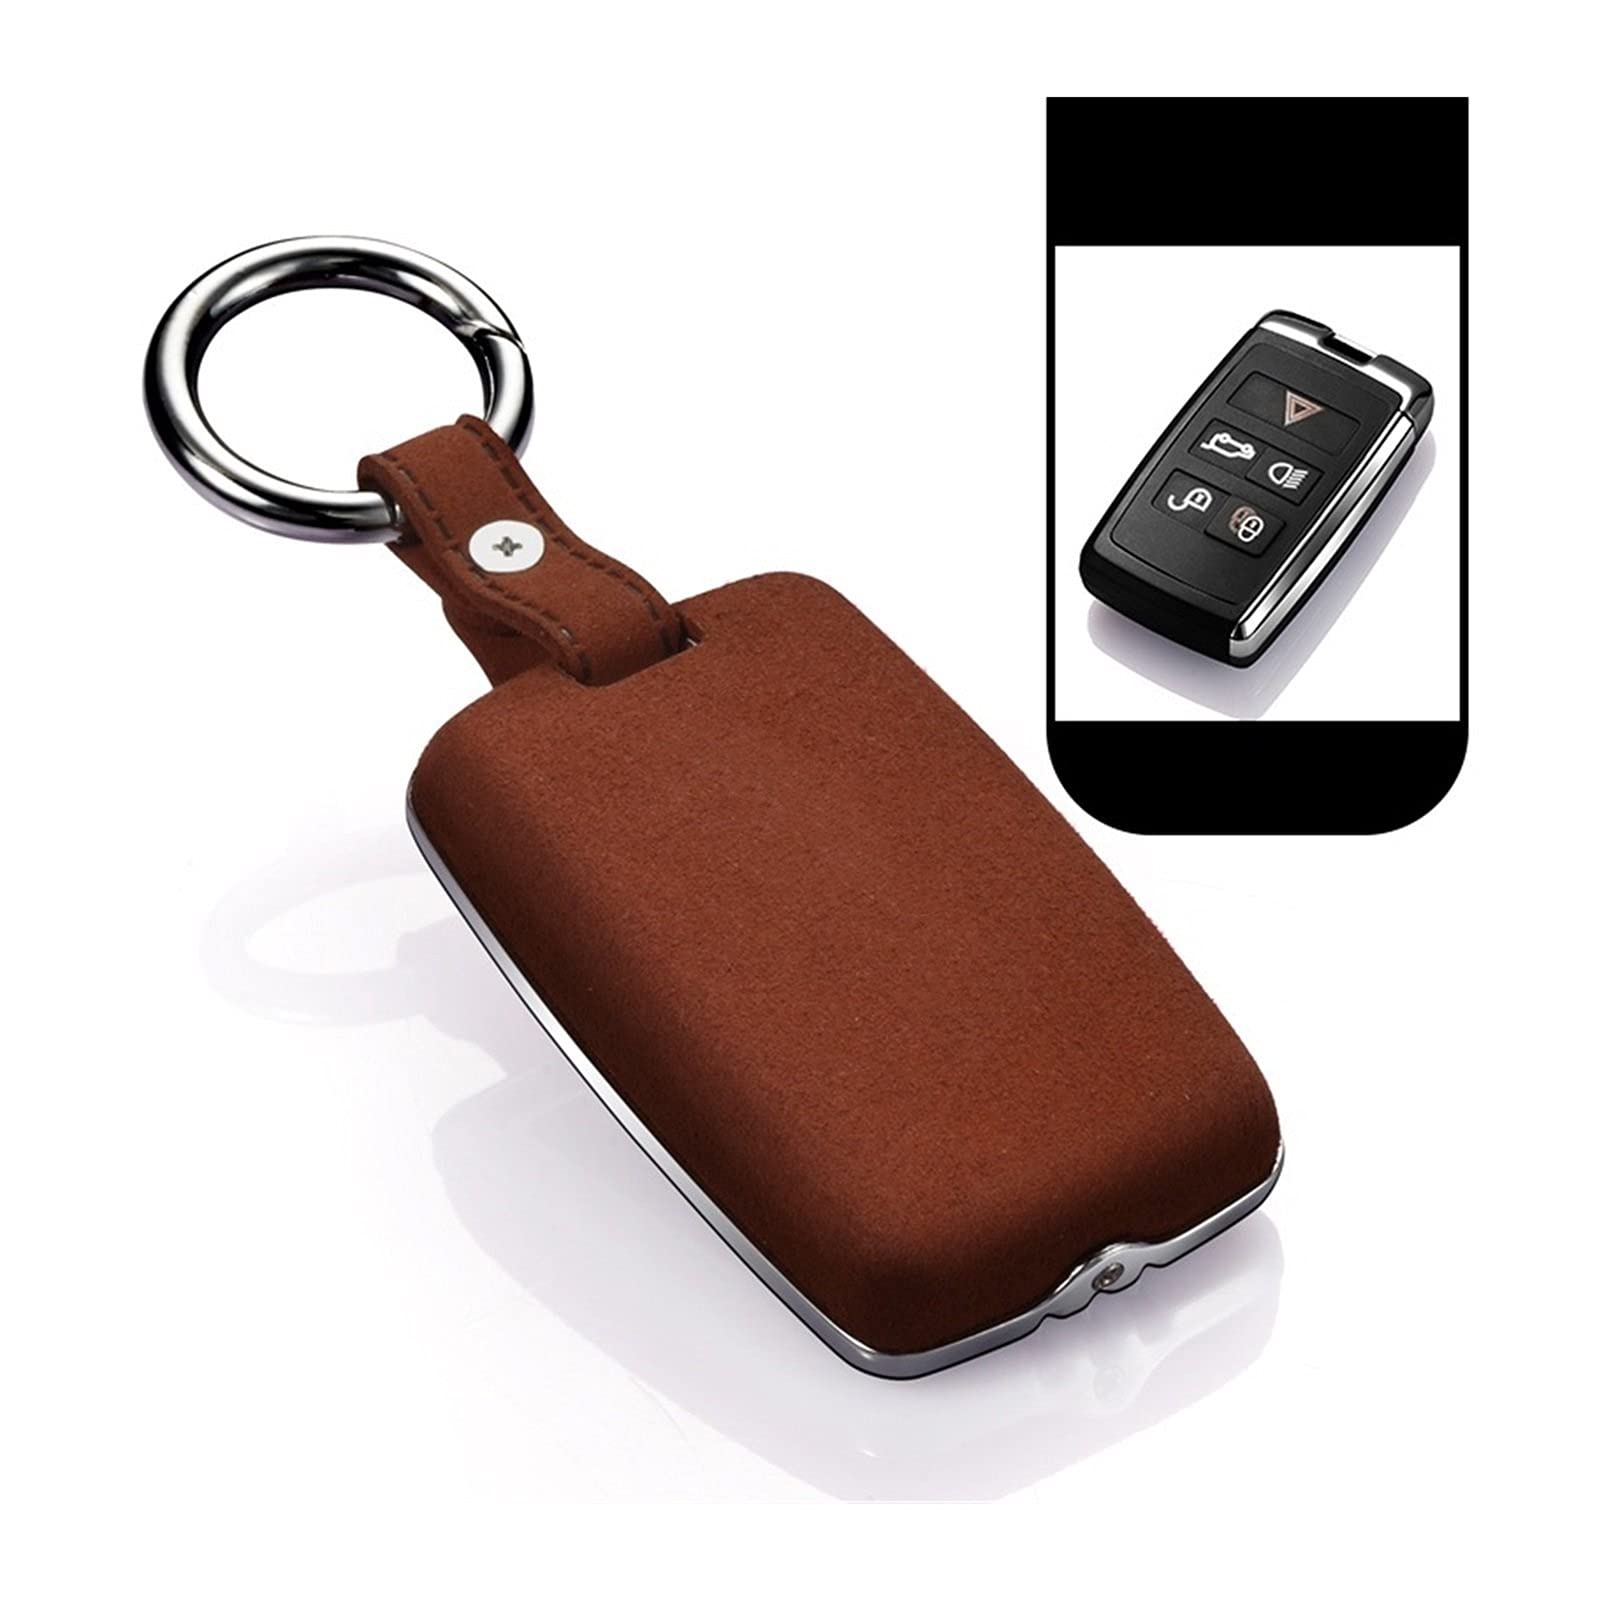 ZLLD Autoschlüssel Schlüssel Hülle Schlüsselanhänger Tragbare Mode Echtes Leder Auto Key Case Abdecktasche Für Land Rover Range Rover Sport Evoque Velar Discovery 5 Auto Schlüssel (Farbe : B)